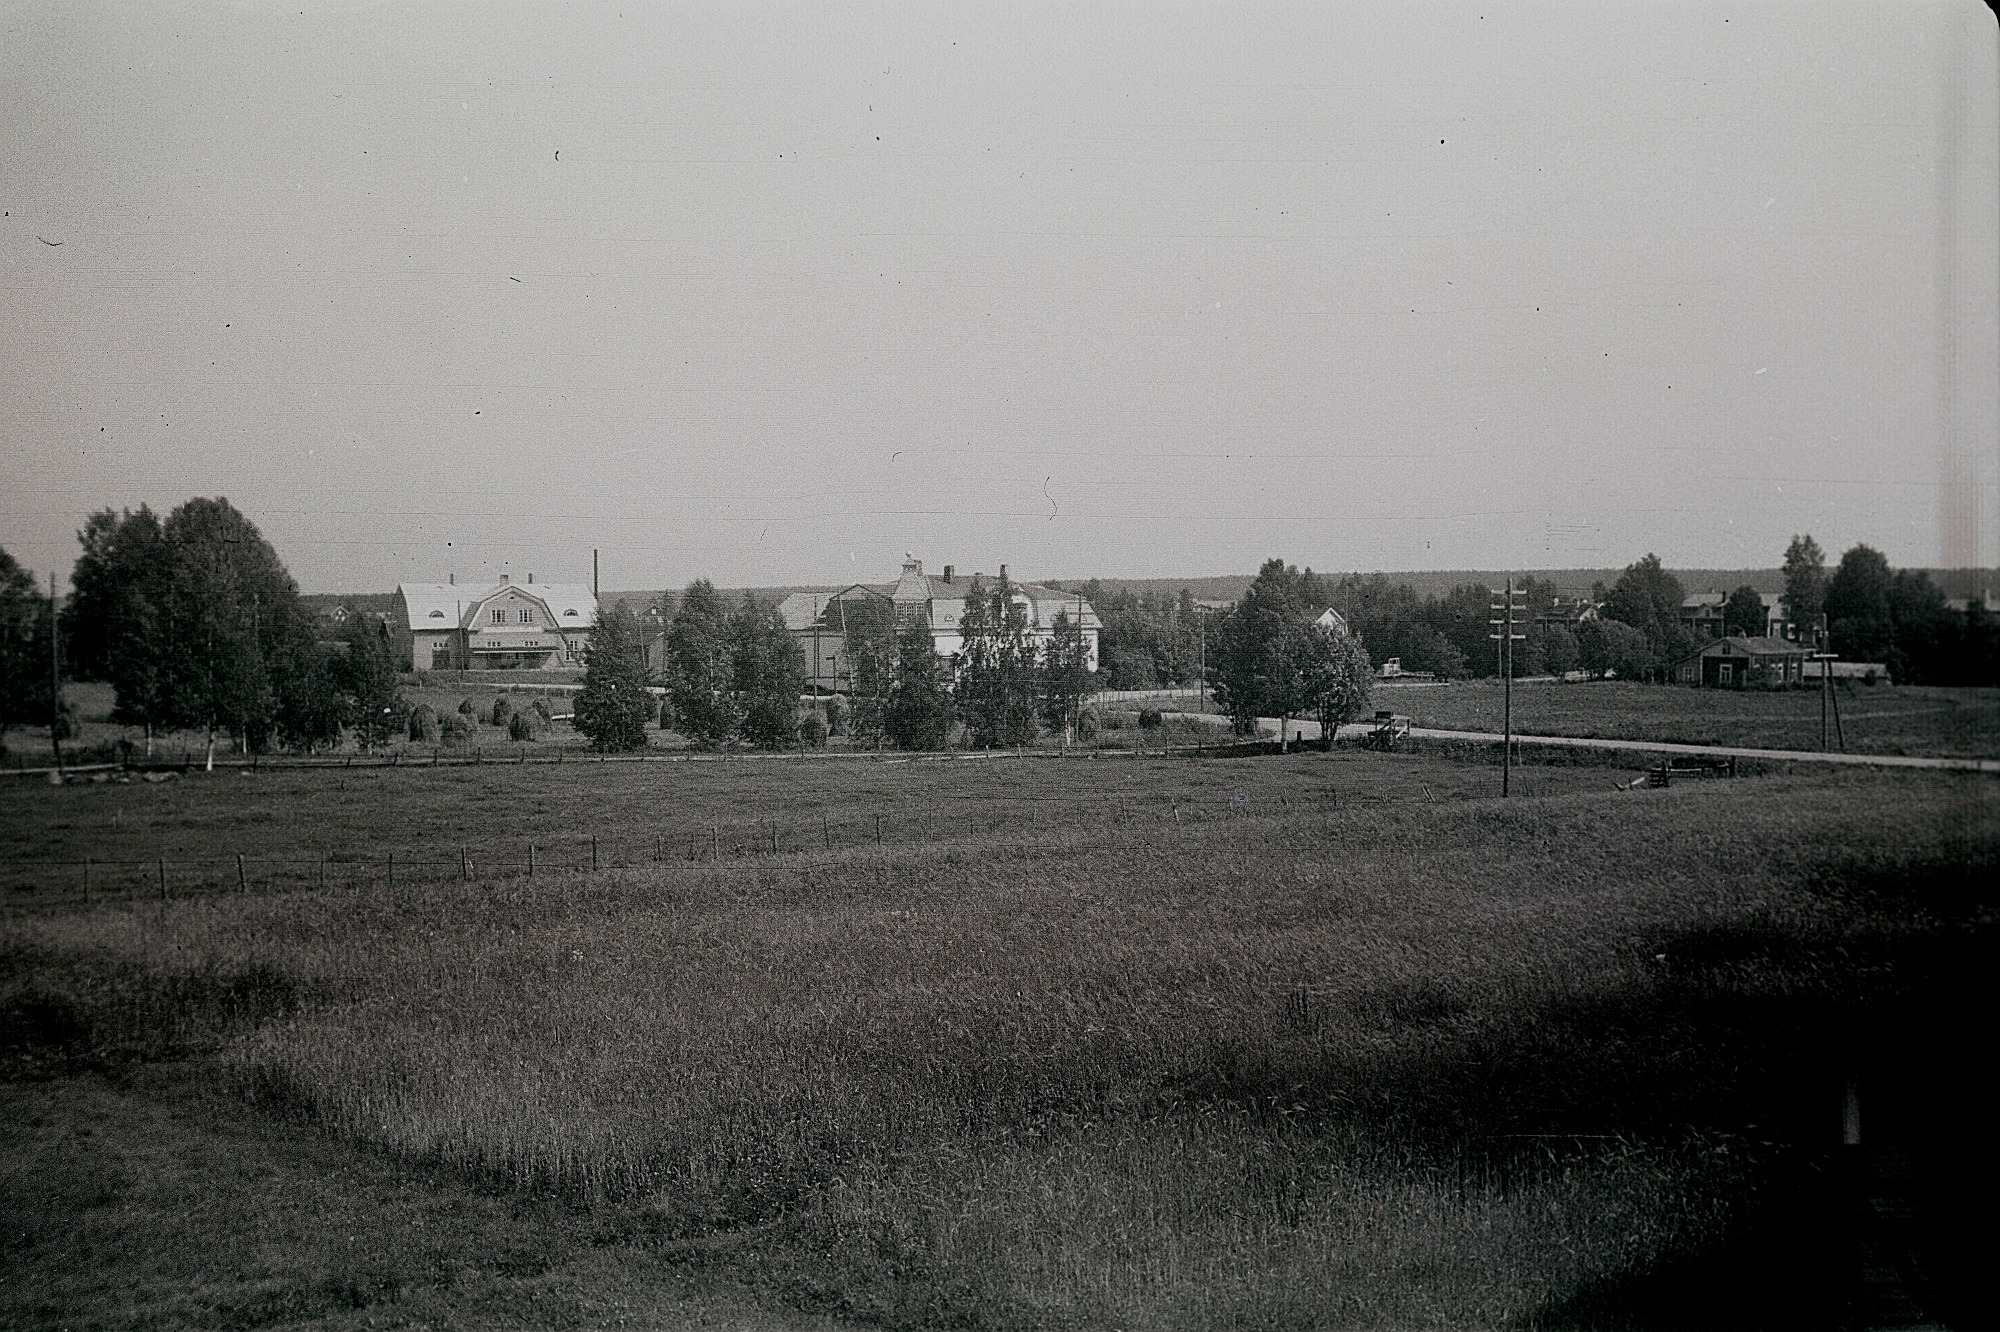 Till vänster Dagsmark Andelsmejeri byggt 1929, mitt i bild Storkull affärshus byggt 1916. Huset till höger byggde Broberg i tiderna och sedan bodde Glas-Kajs där.